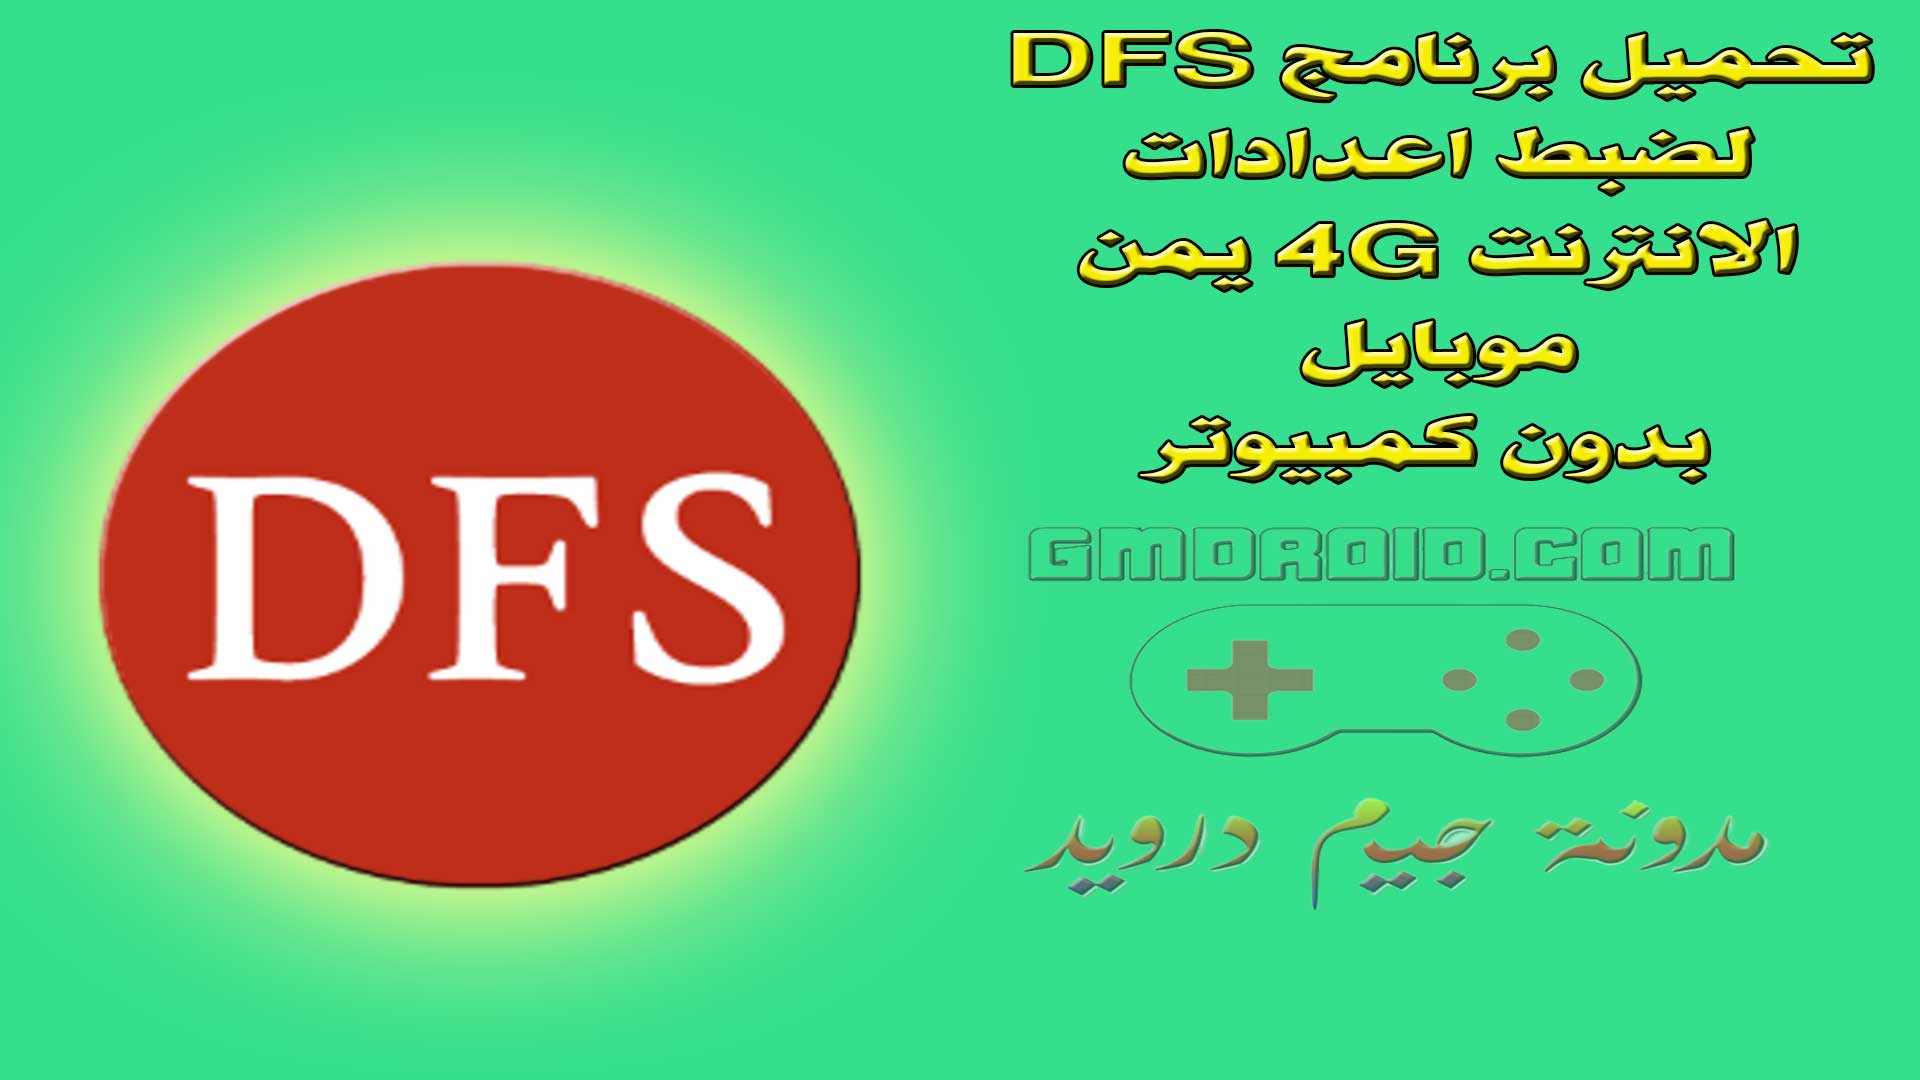 تحميل برنامج DFS لضبط اعدادات الانترنت 4G يمن موبايل بدون كمبيوتر